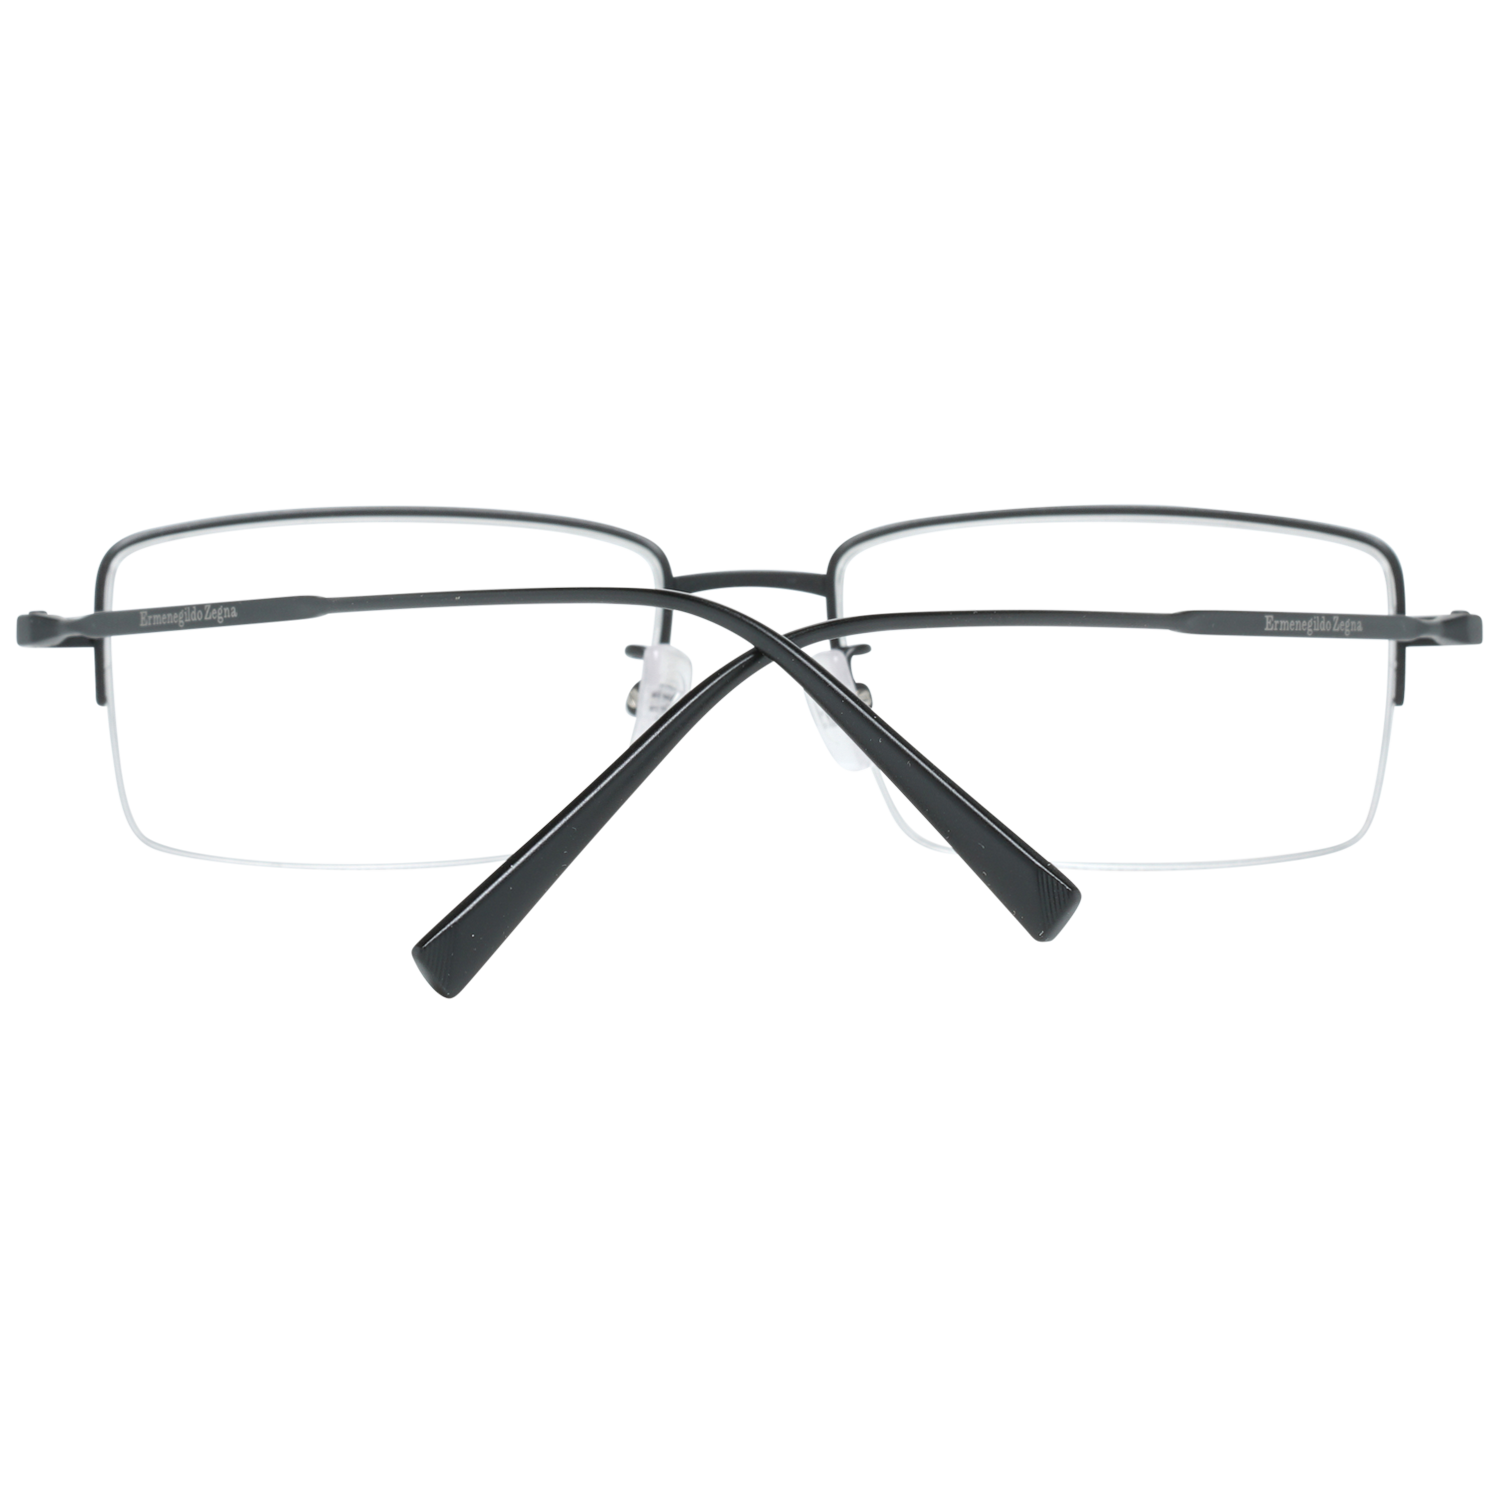 Ermenegildo Zegna Frames Ermenegildo Zegna Glasses Optical Frame EZ5066-D 002 54 Titanium Eyeglasses Eyewear UK USA Australia 